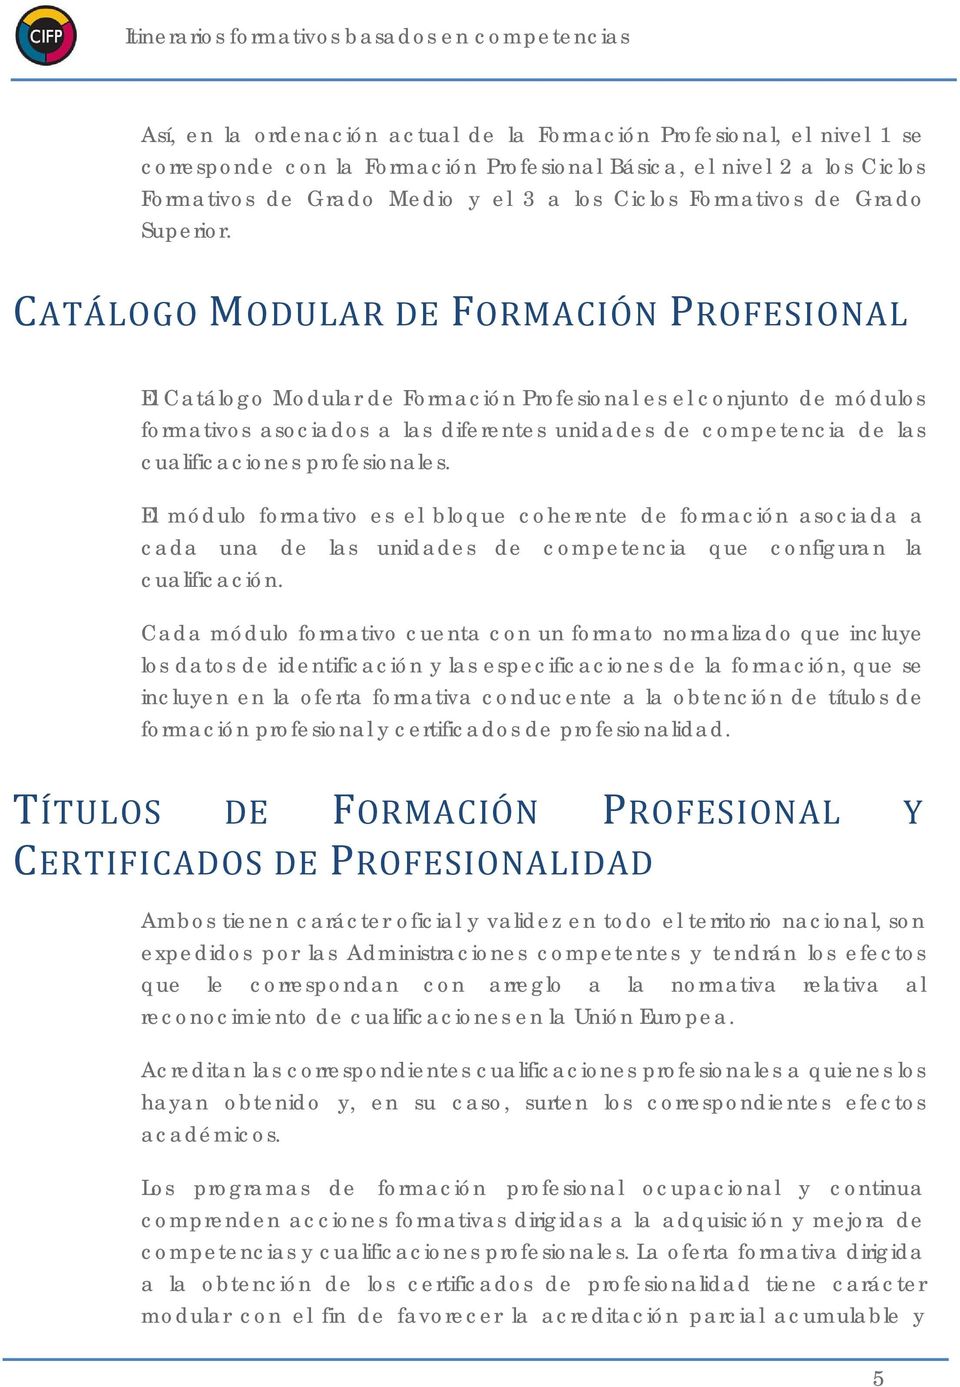 CATÁLOGO MODULAR DE FORMACIÓN PROFESIONAL El Catálogo Modular de Formación Profesional es el conjunto de módulos formativos asociados a las diferentes unidades de competencia de las cualificaciones